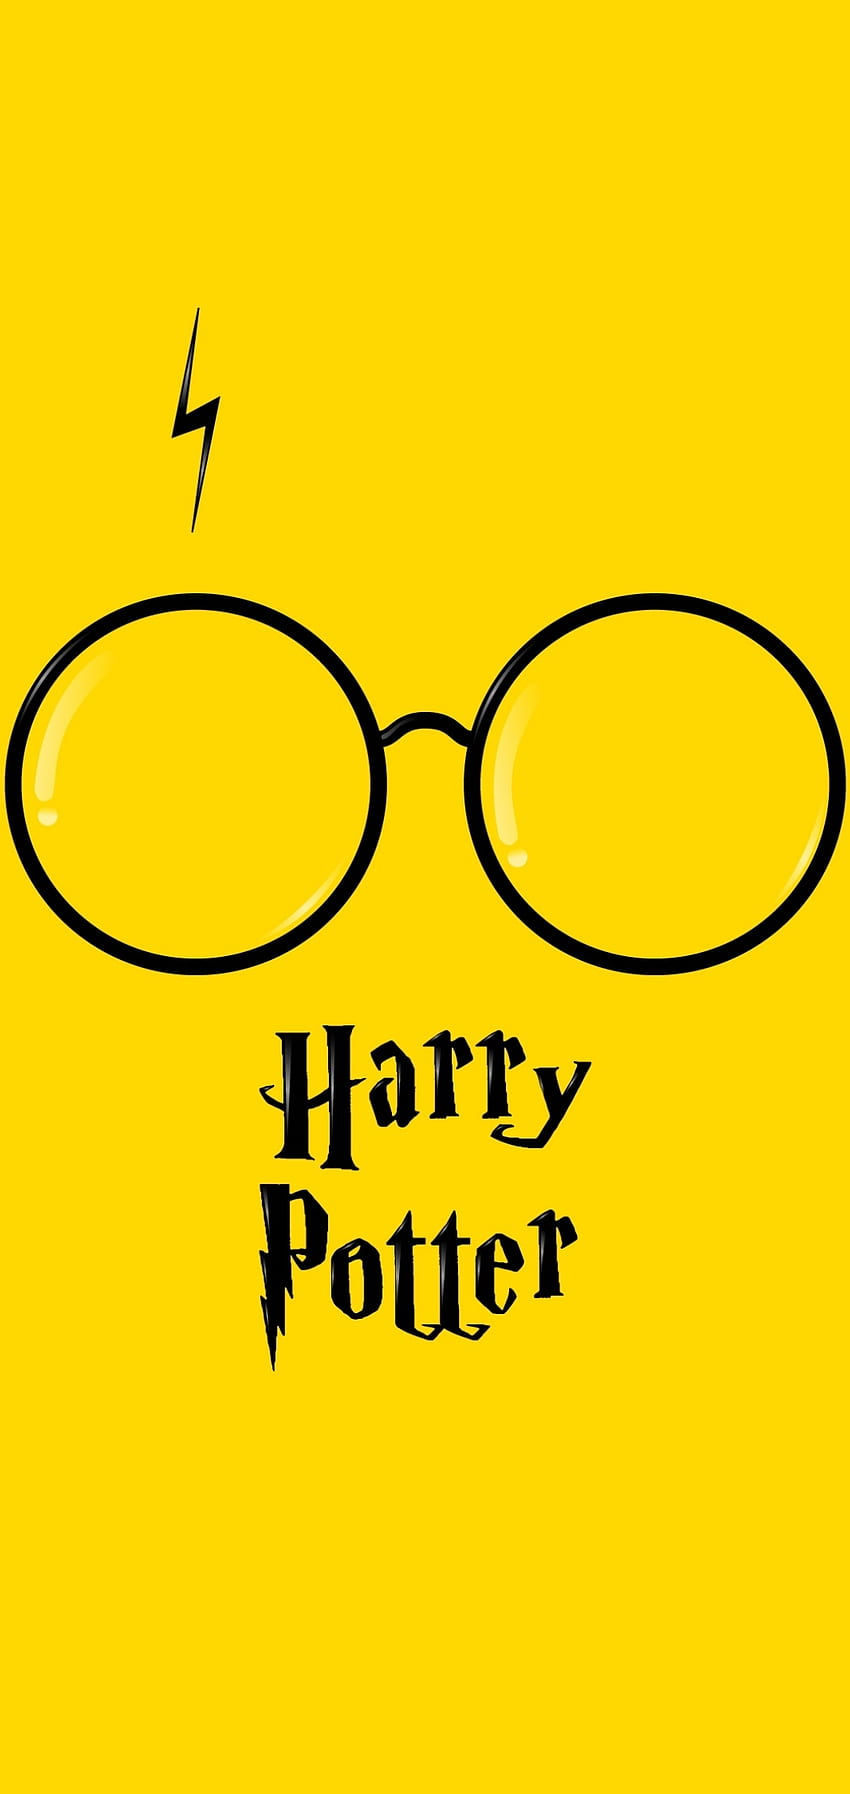 Hình nền Harry Potter cho iPhone này sẽ giúp bạn nhớ lại những kỷ niệm thời thơ ấu với những người bạn thân của Harry. Cùng tìm lại sự đoàn kết và tình bạn qua hình ảnh này nhé! 